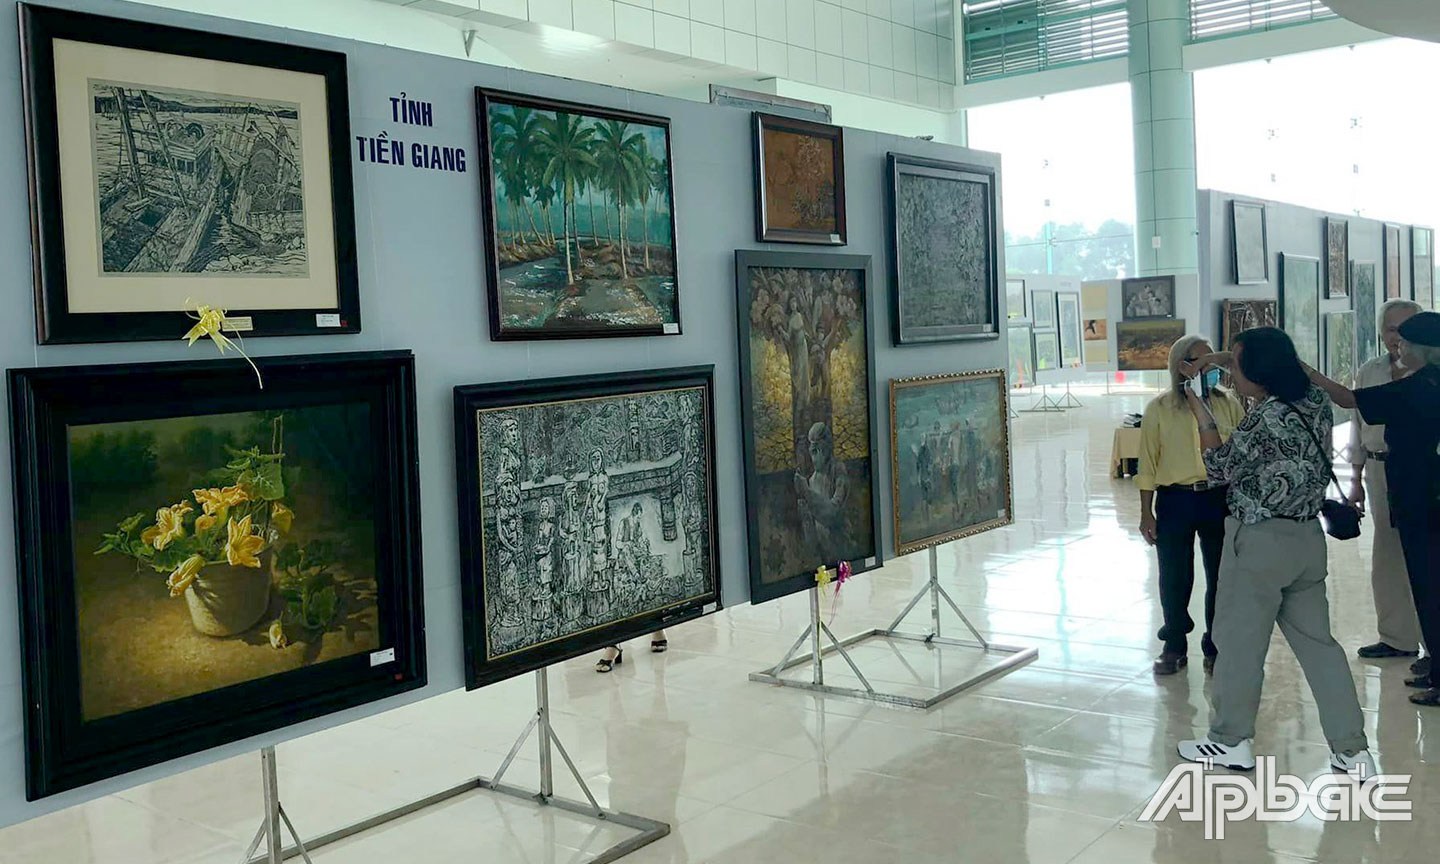  Khu vực triển lãm của Tiền Giang